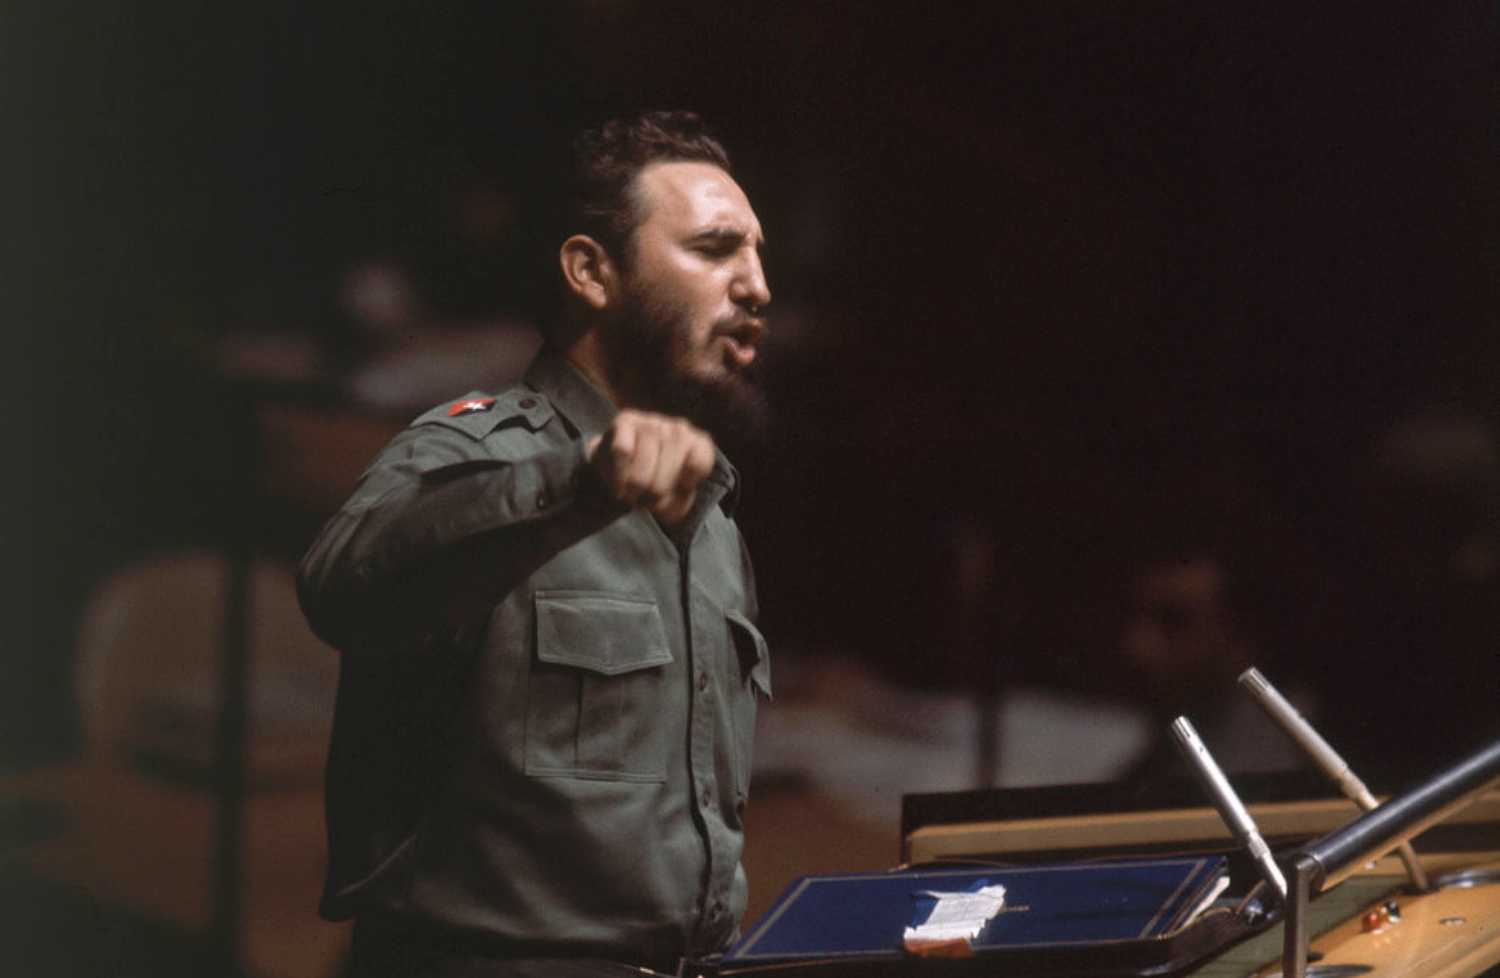 Φιντέλ Κάστρο: «Ο σοσιαλισμός είναι και θα εξακολουθήσει να είναι η ελπίδα, η μόνη ελπίδα…»